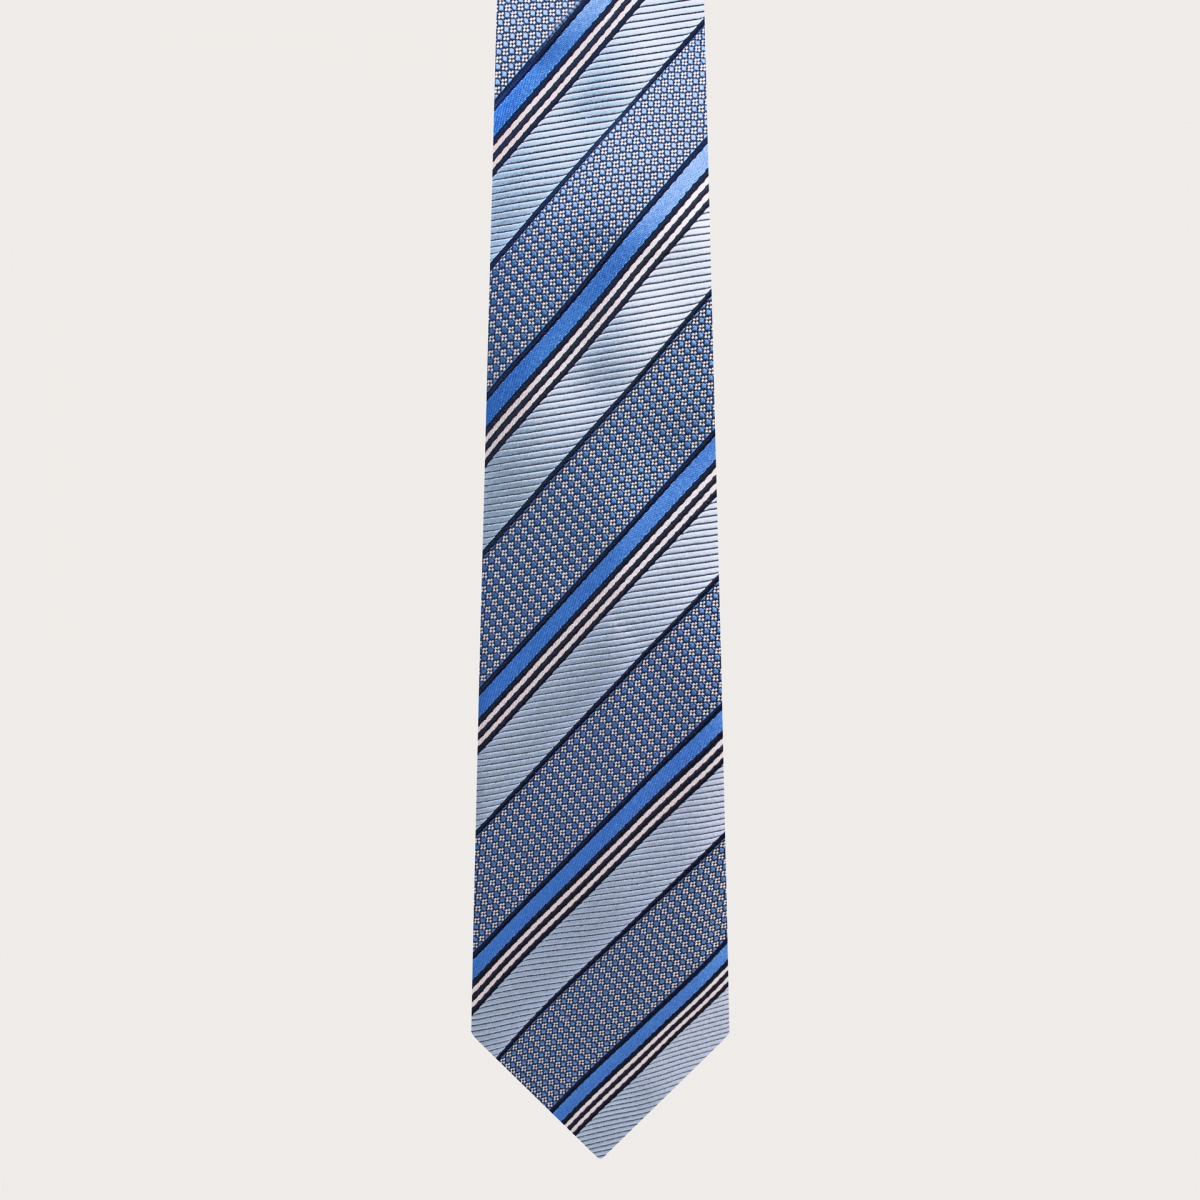 Cravate de cérémonie étroite en soie jacquard à motif régimentaire bleu clair